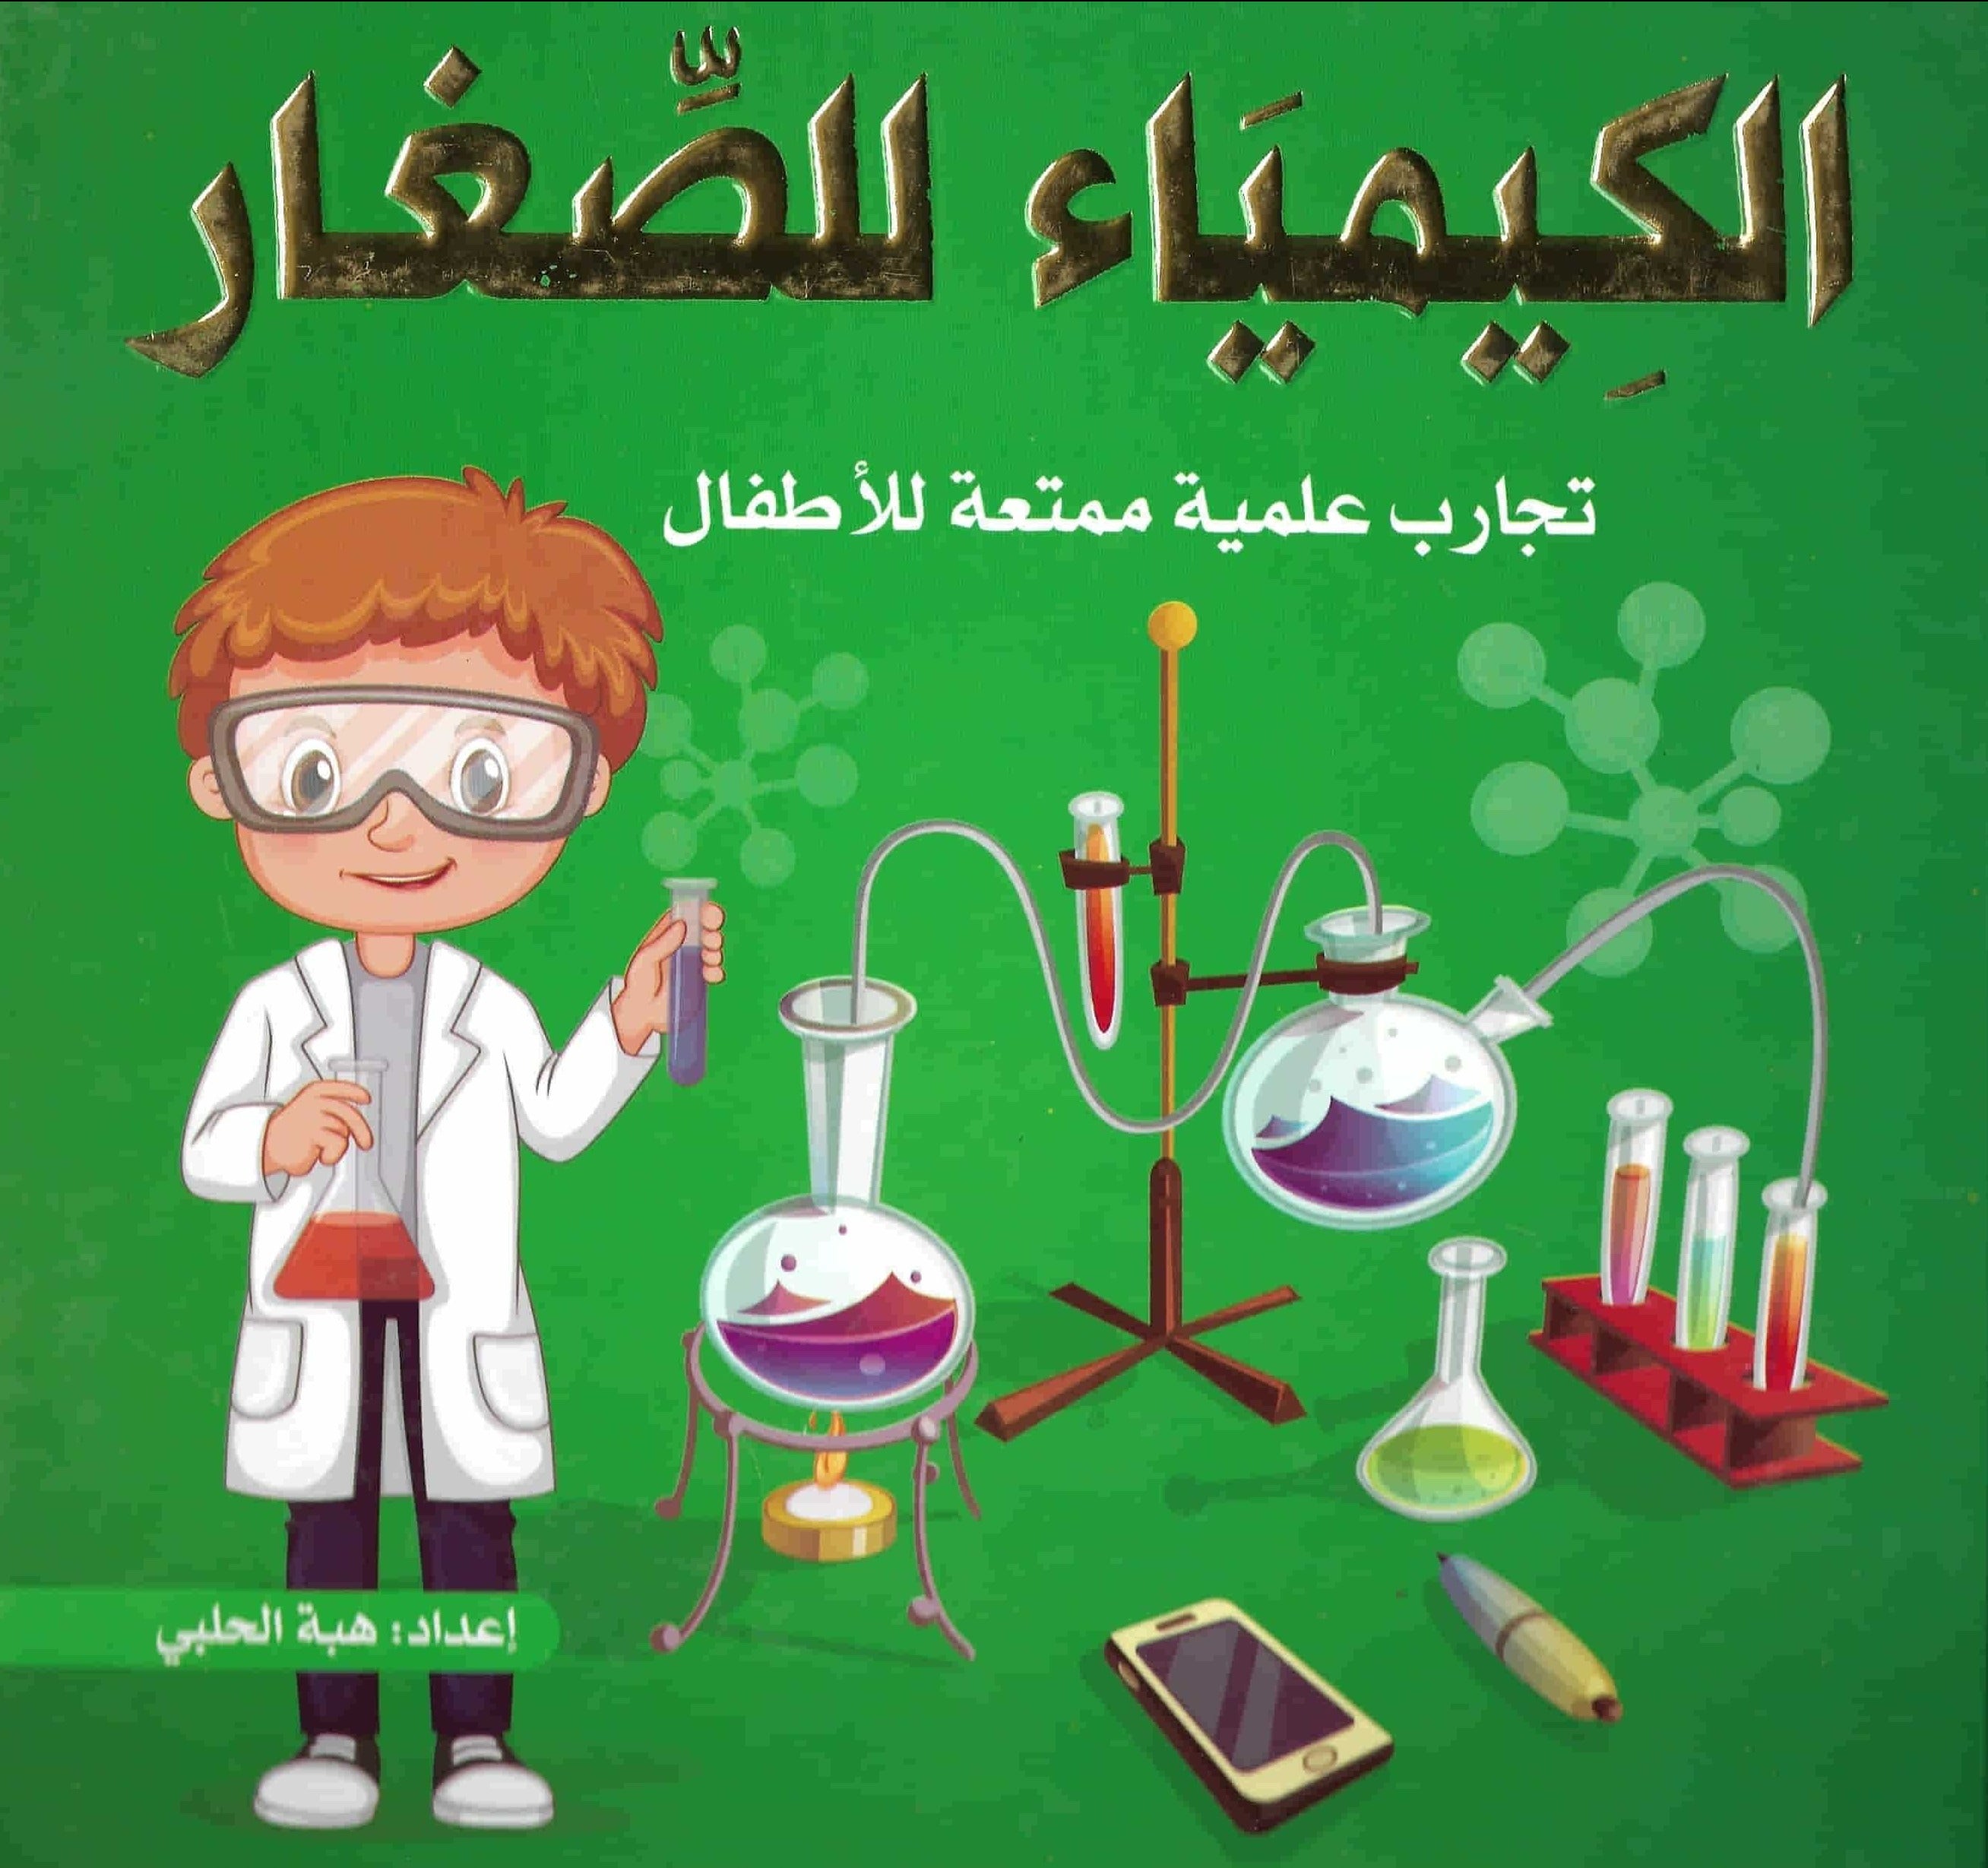 الكيمياء للصغار : تجارب علمية ممتعة للأطفال كتب أطفال هبة الحلبي